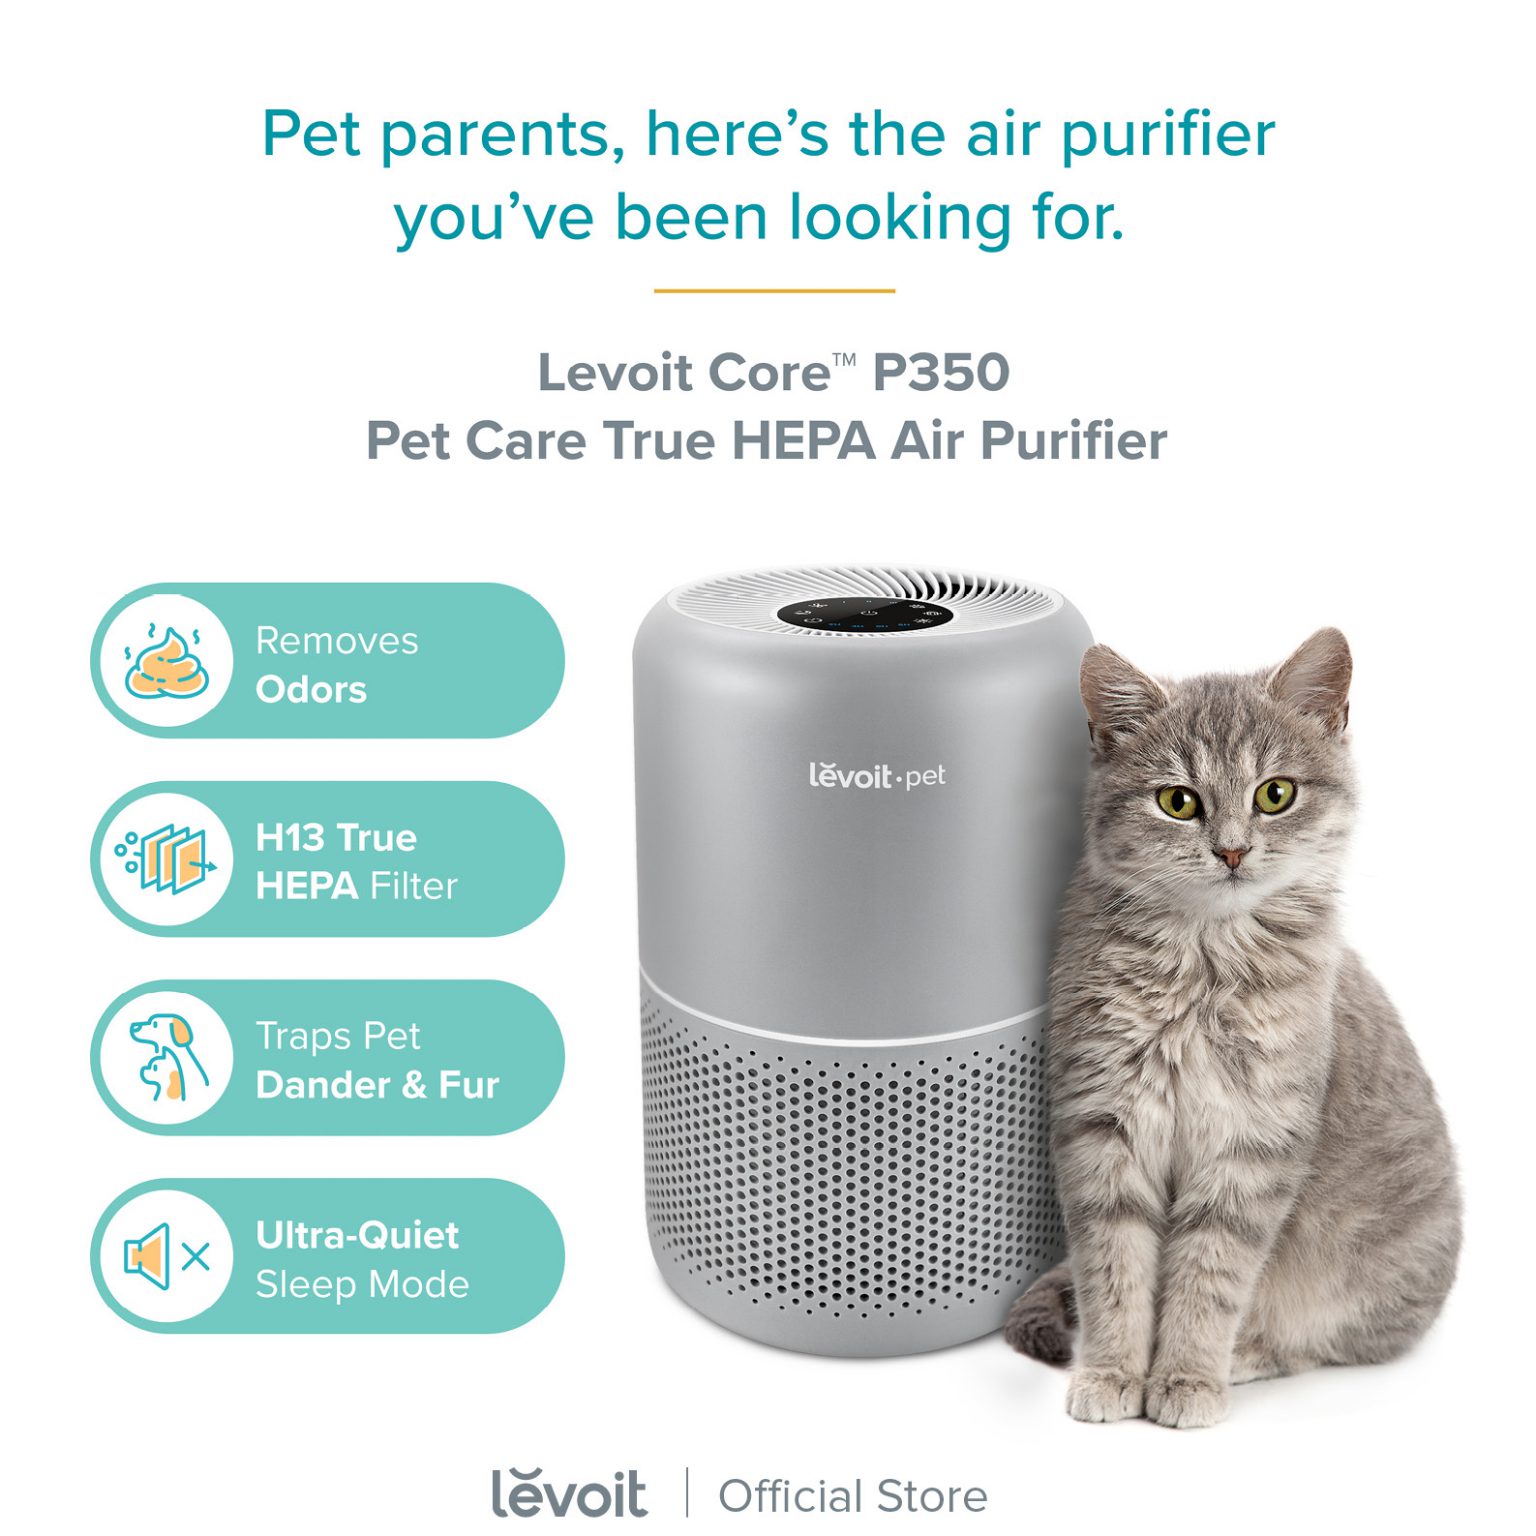 Levoit Core P350 Pet Care Air Purifier Effective Area 40 m² H13 True